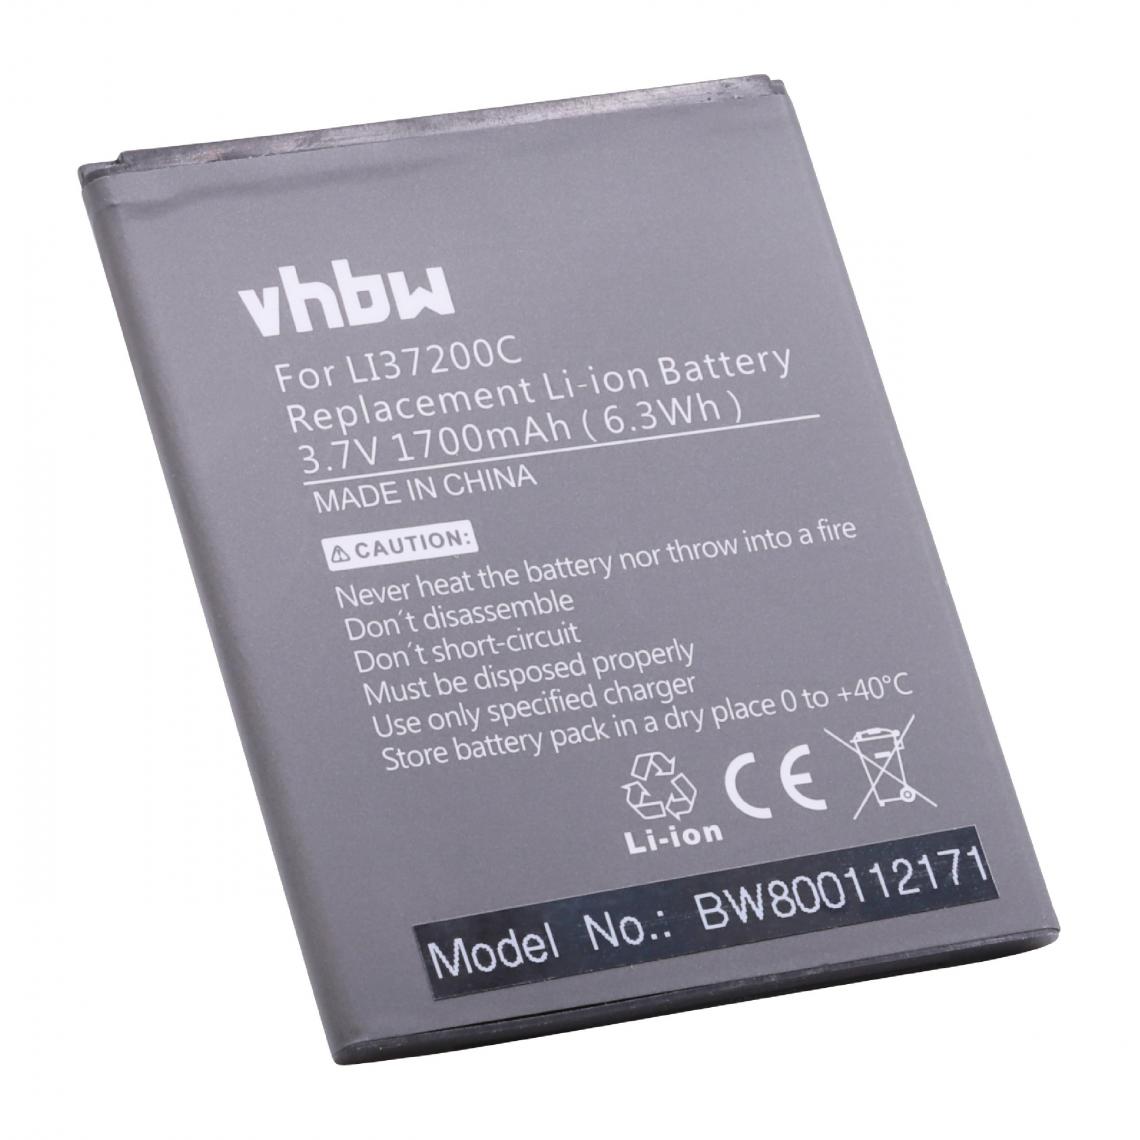 Vhbw - vhbw Batterie remplacement pour Hisense LI37200C pour smartphone (1700mAh, 3,7V, Li-ion) - Batterie téléphone